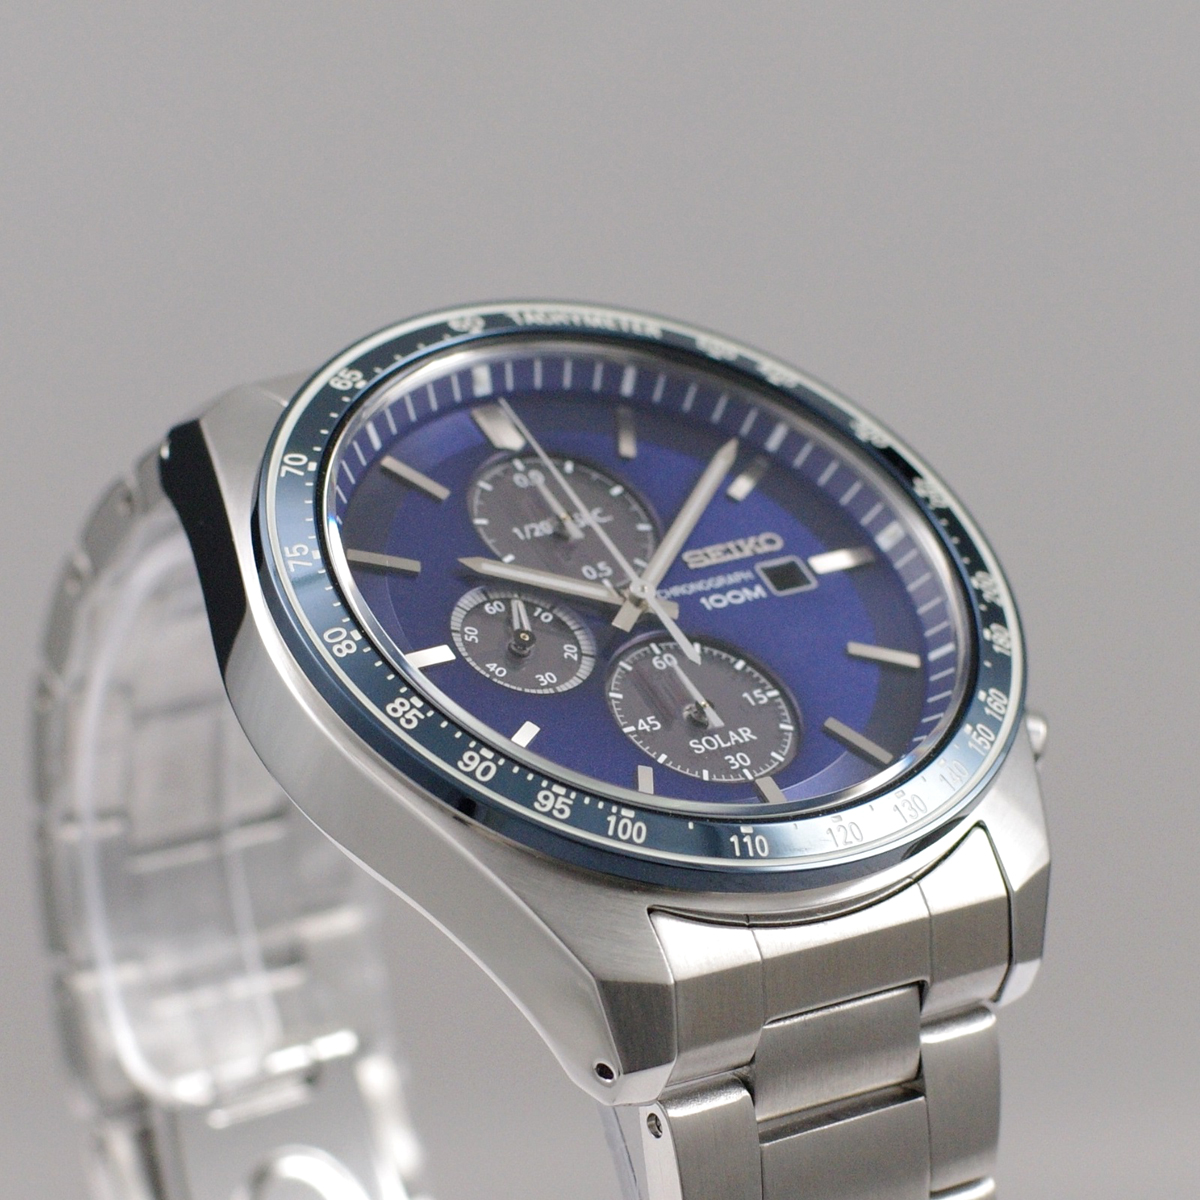 【楽天市場】セイコー SEIKO 腕時計 ソーラー SOLAR クロノグラフ 100M防水 日本製ムーブメント 海外モデル ネイビー/シルバー